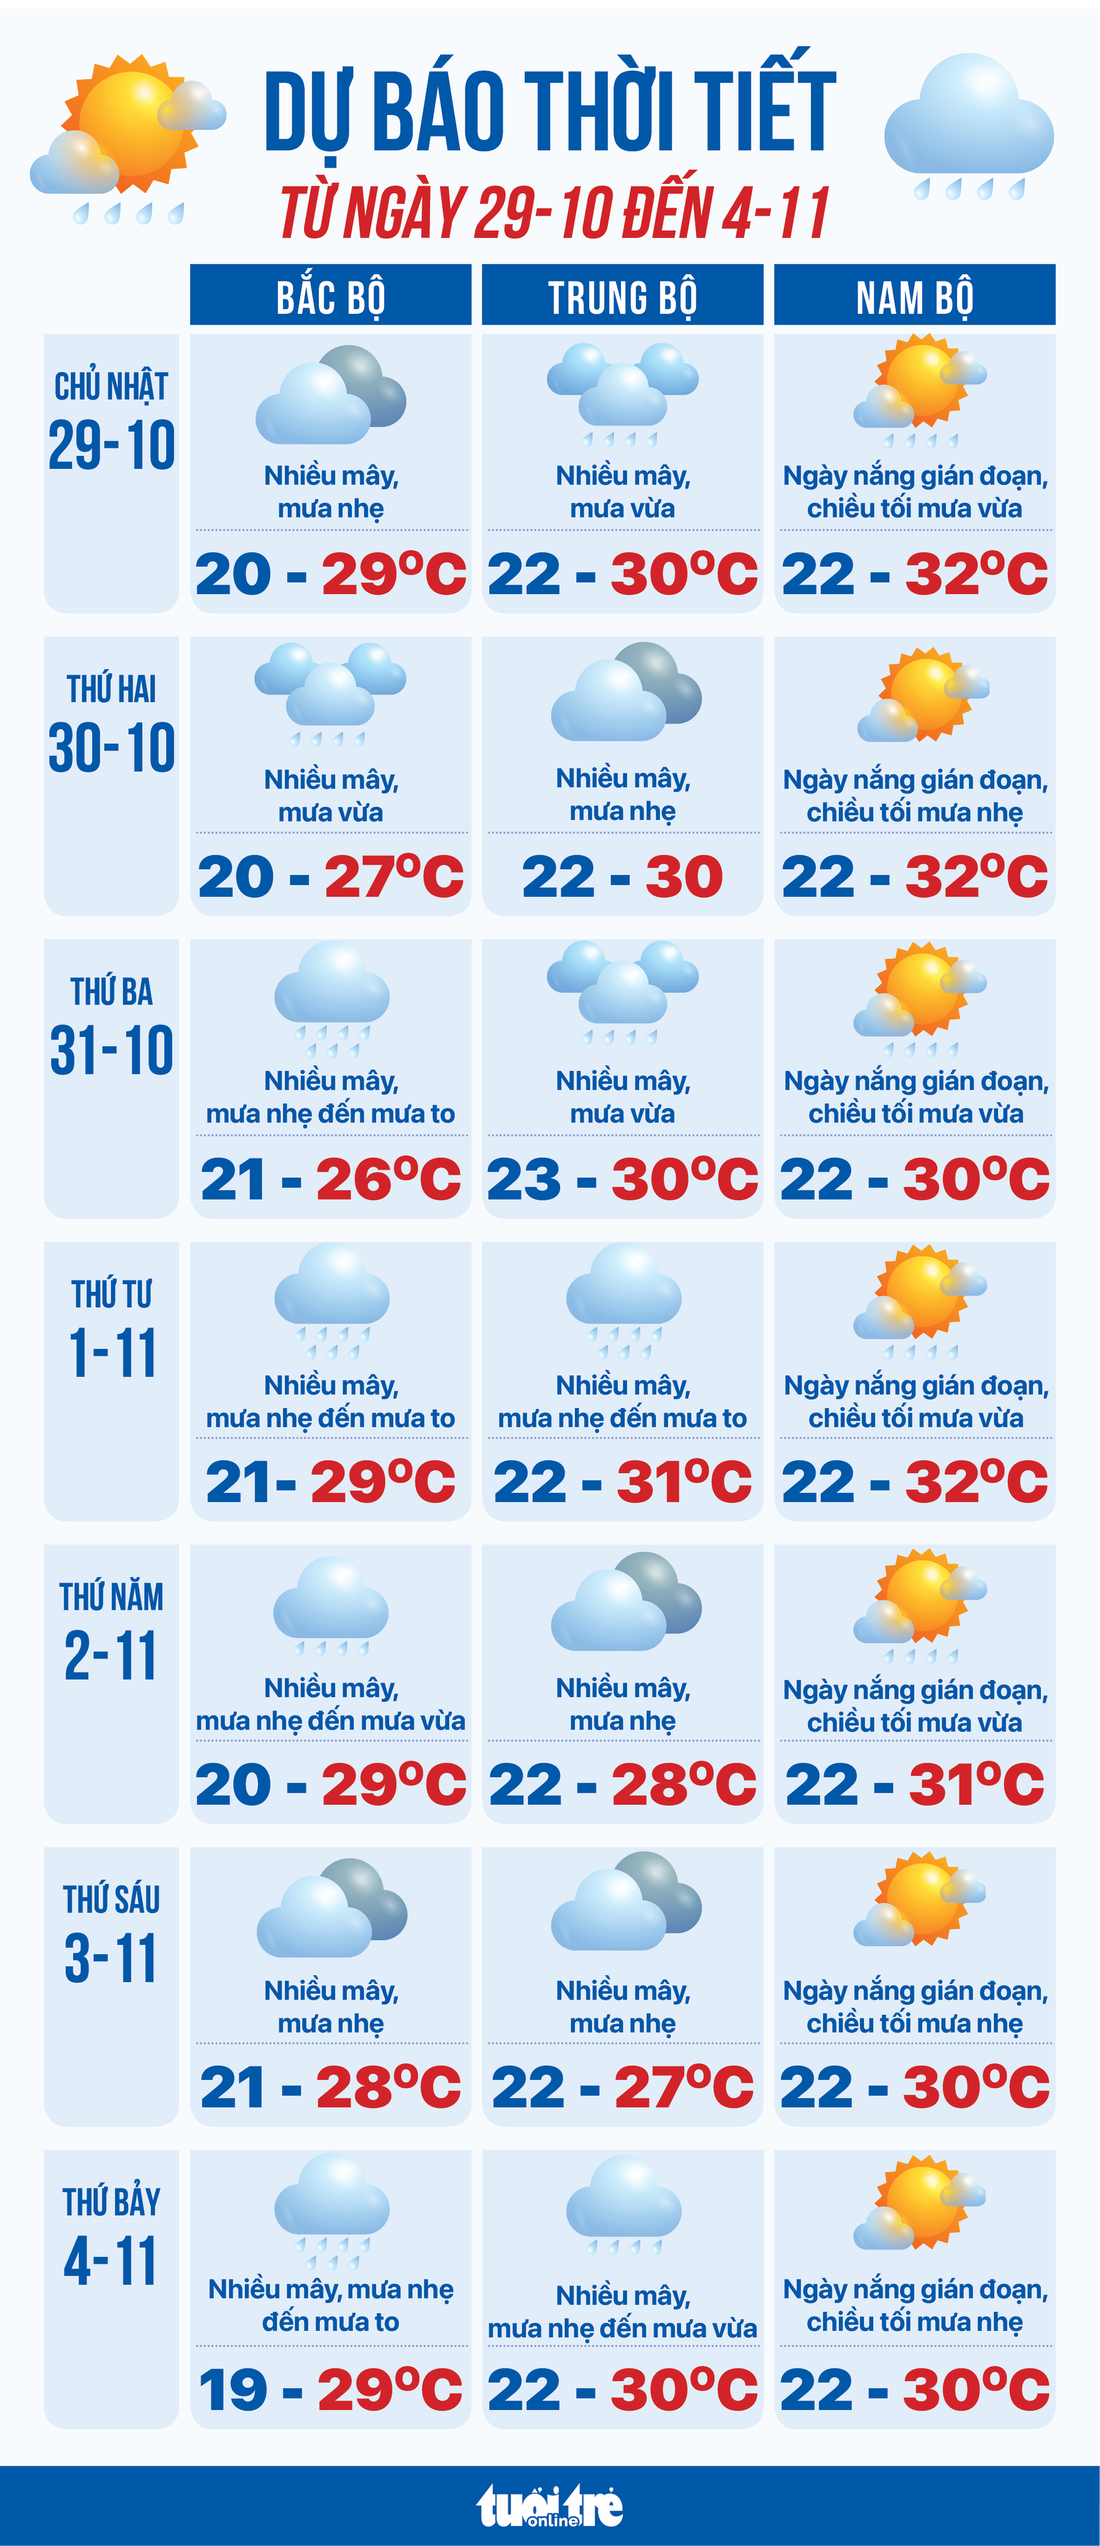 Dự báo thời tiết tuần từ 29-10 đến 4-11 - Đồ họa: NGỌC THÀNH